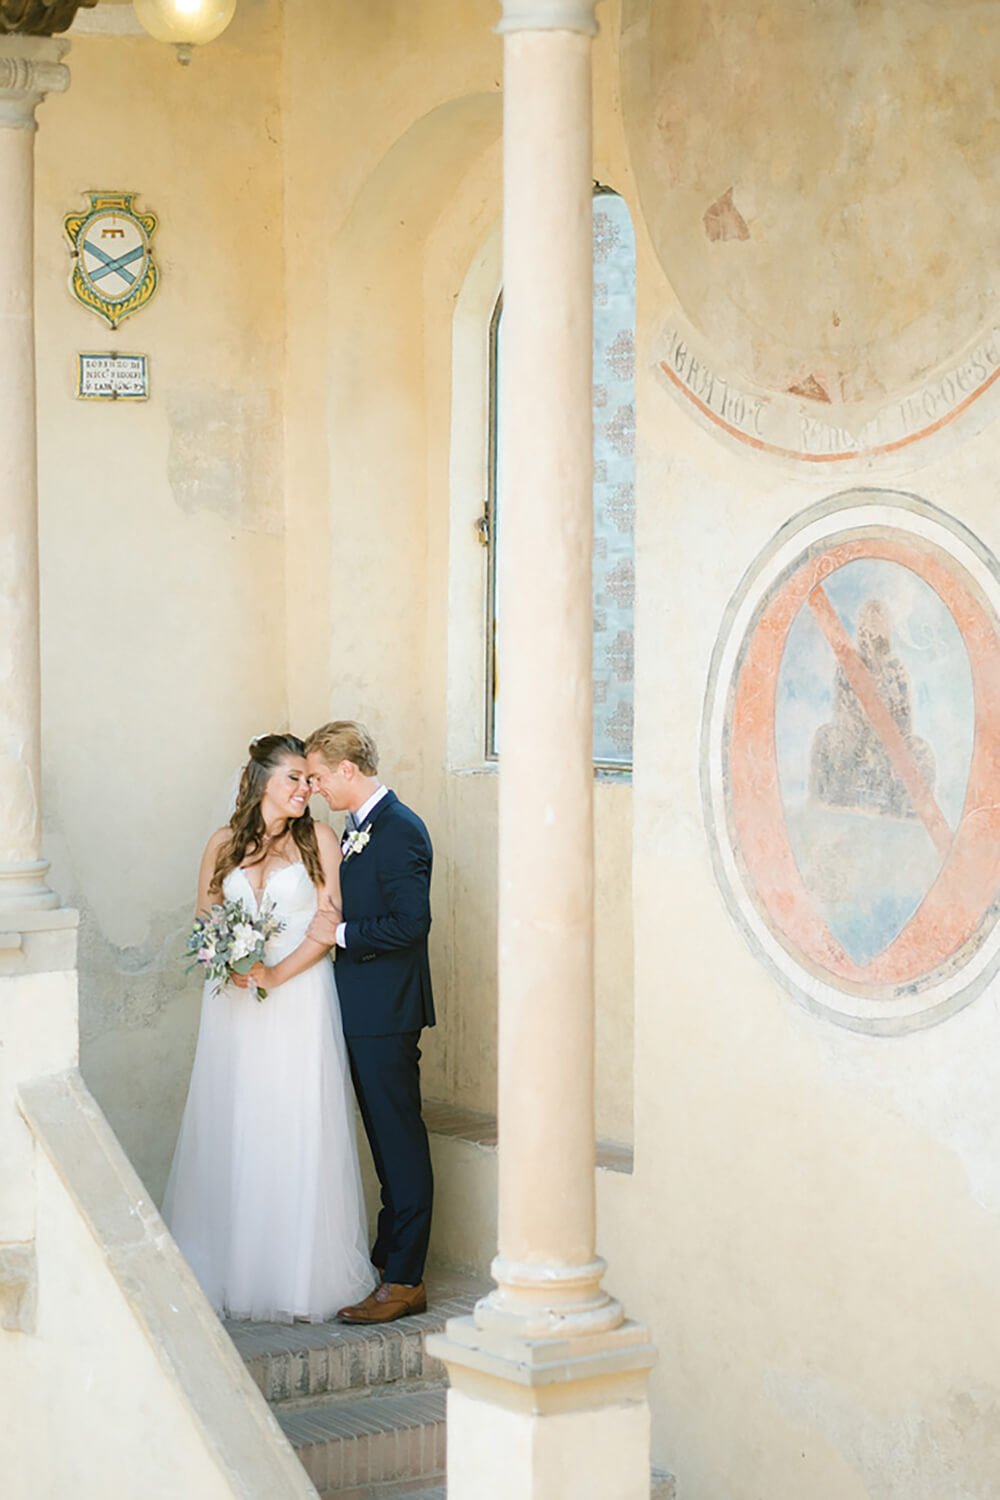 Civil ceremony in Tuscany